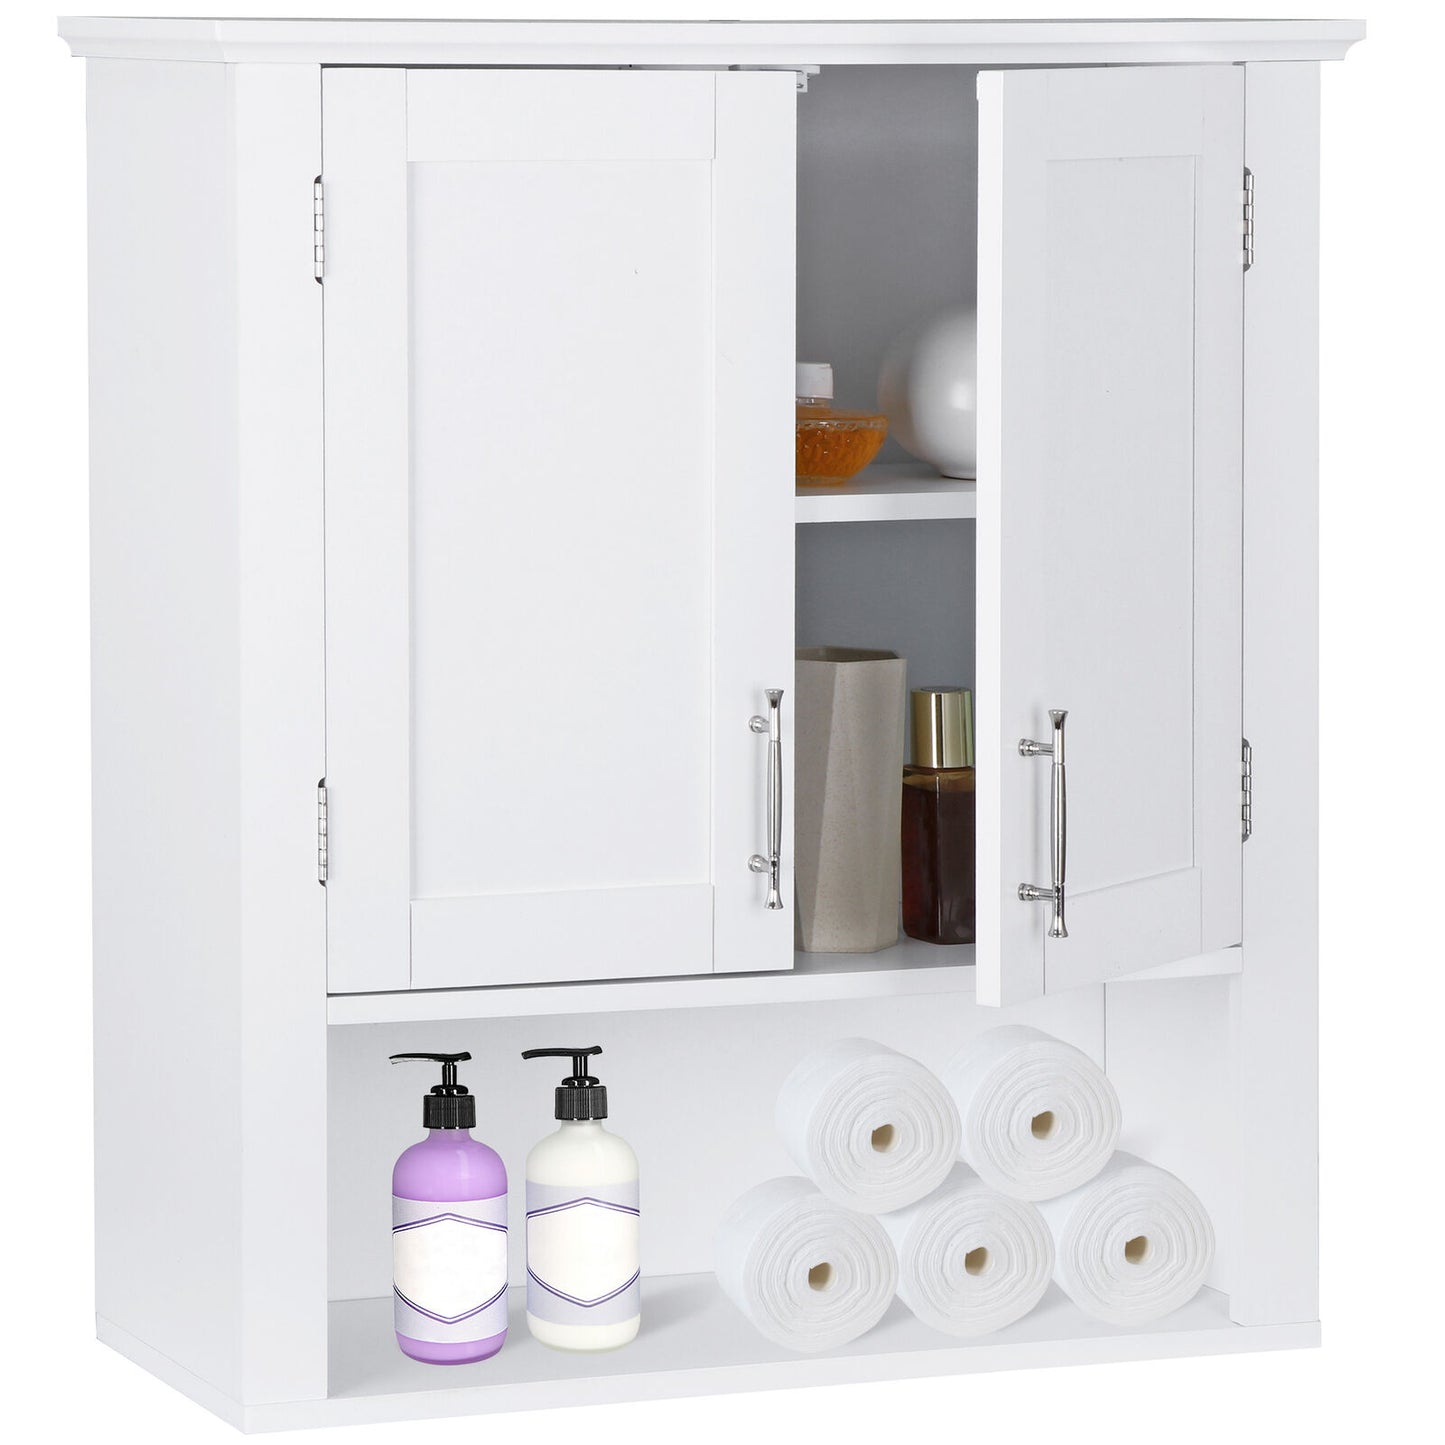 Bathroom Kitchen Cabinet Free Standing Cupboard Storage Organizer Shelf Decor